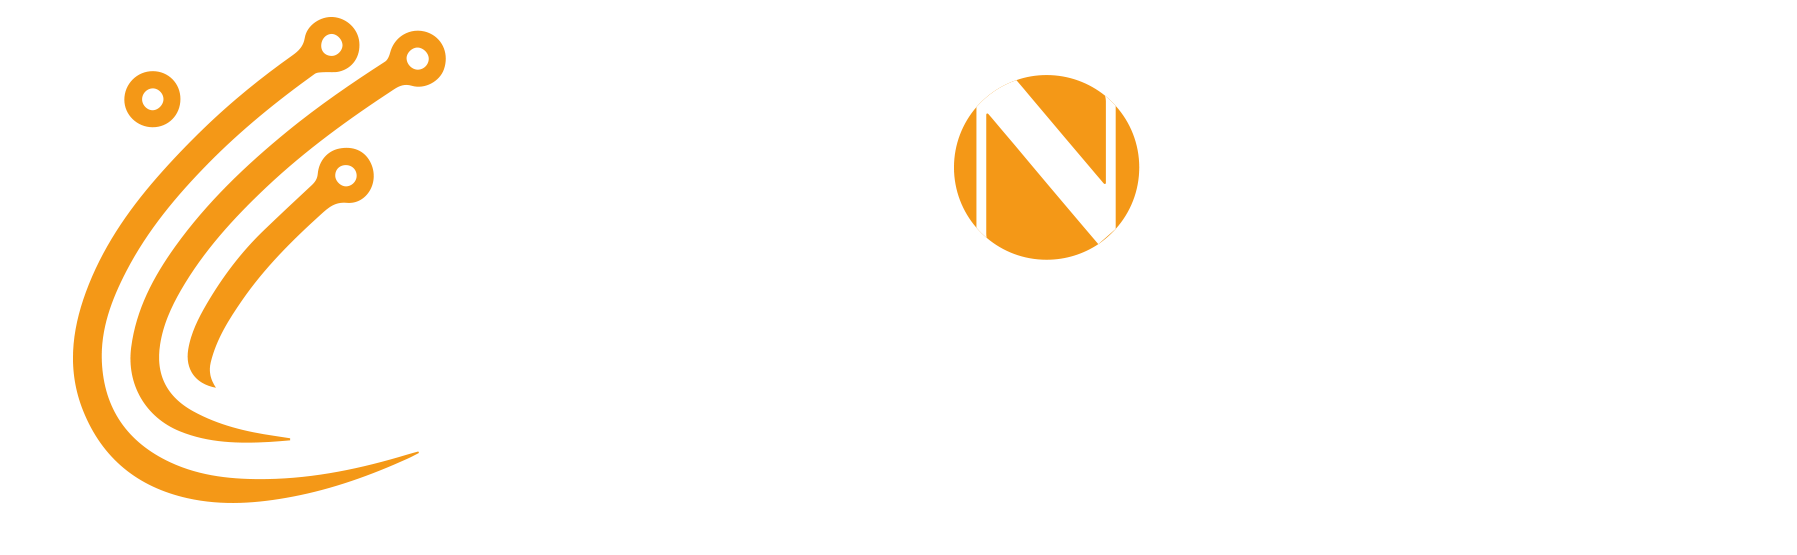 CityNet Technology